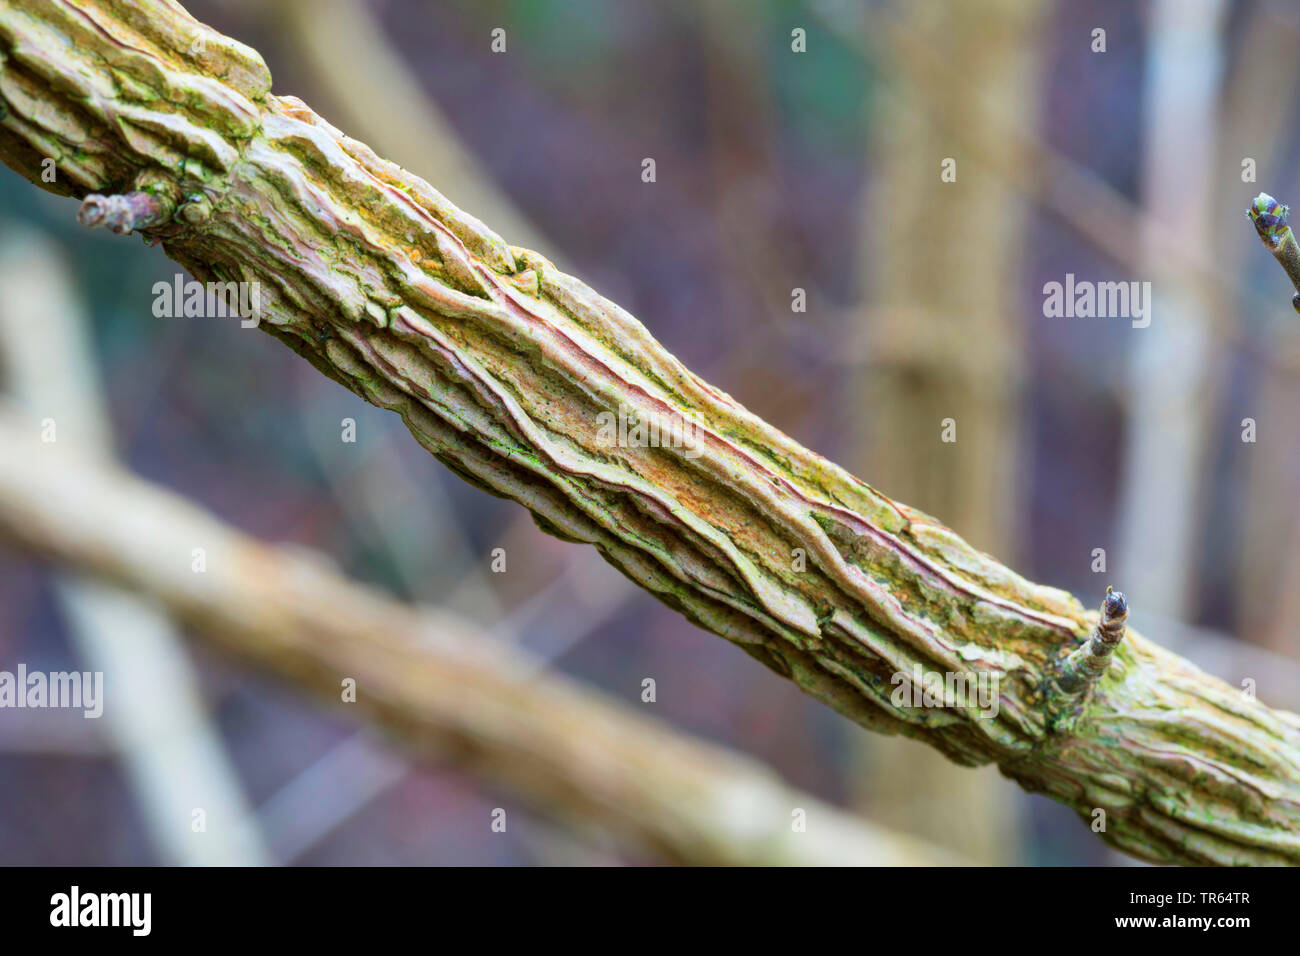 Campo común arce, el arce (Acer campestre), Cork ingles, Alemania Foto de stock